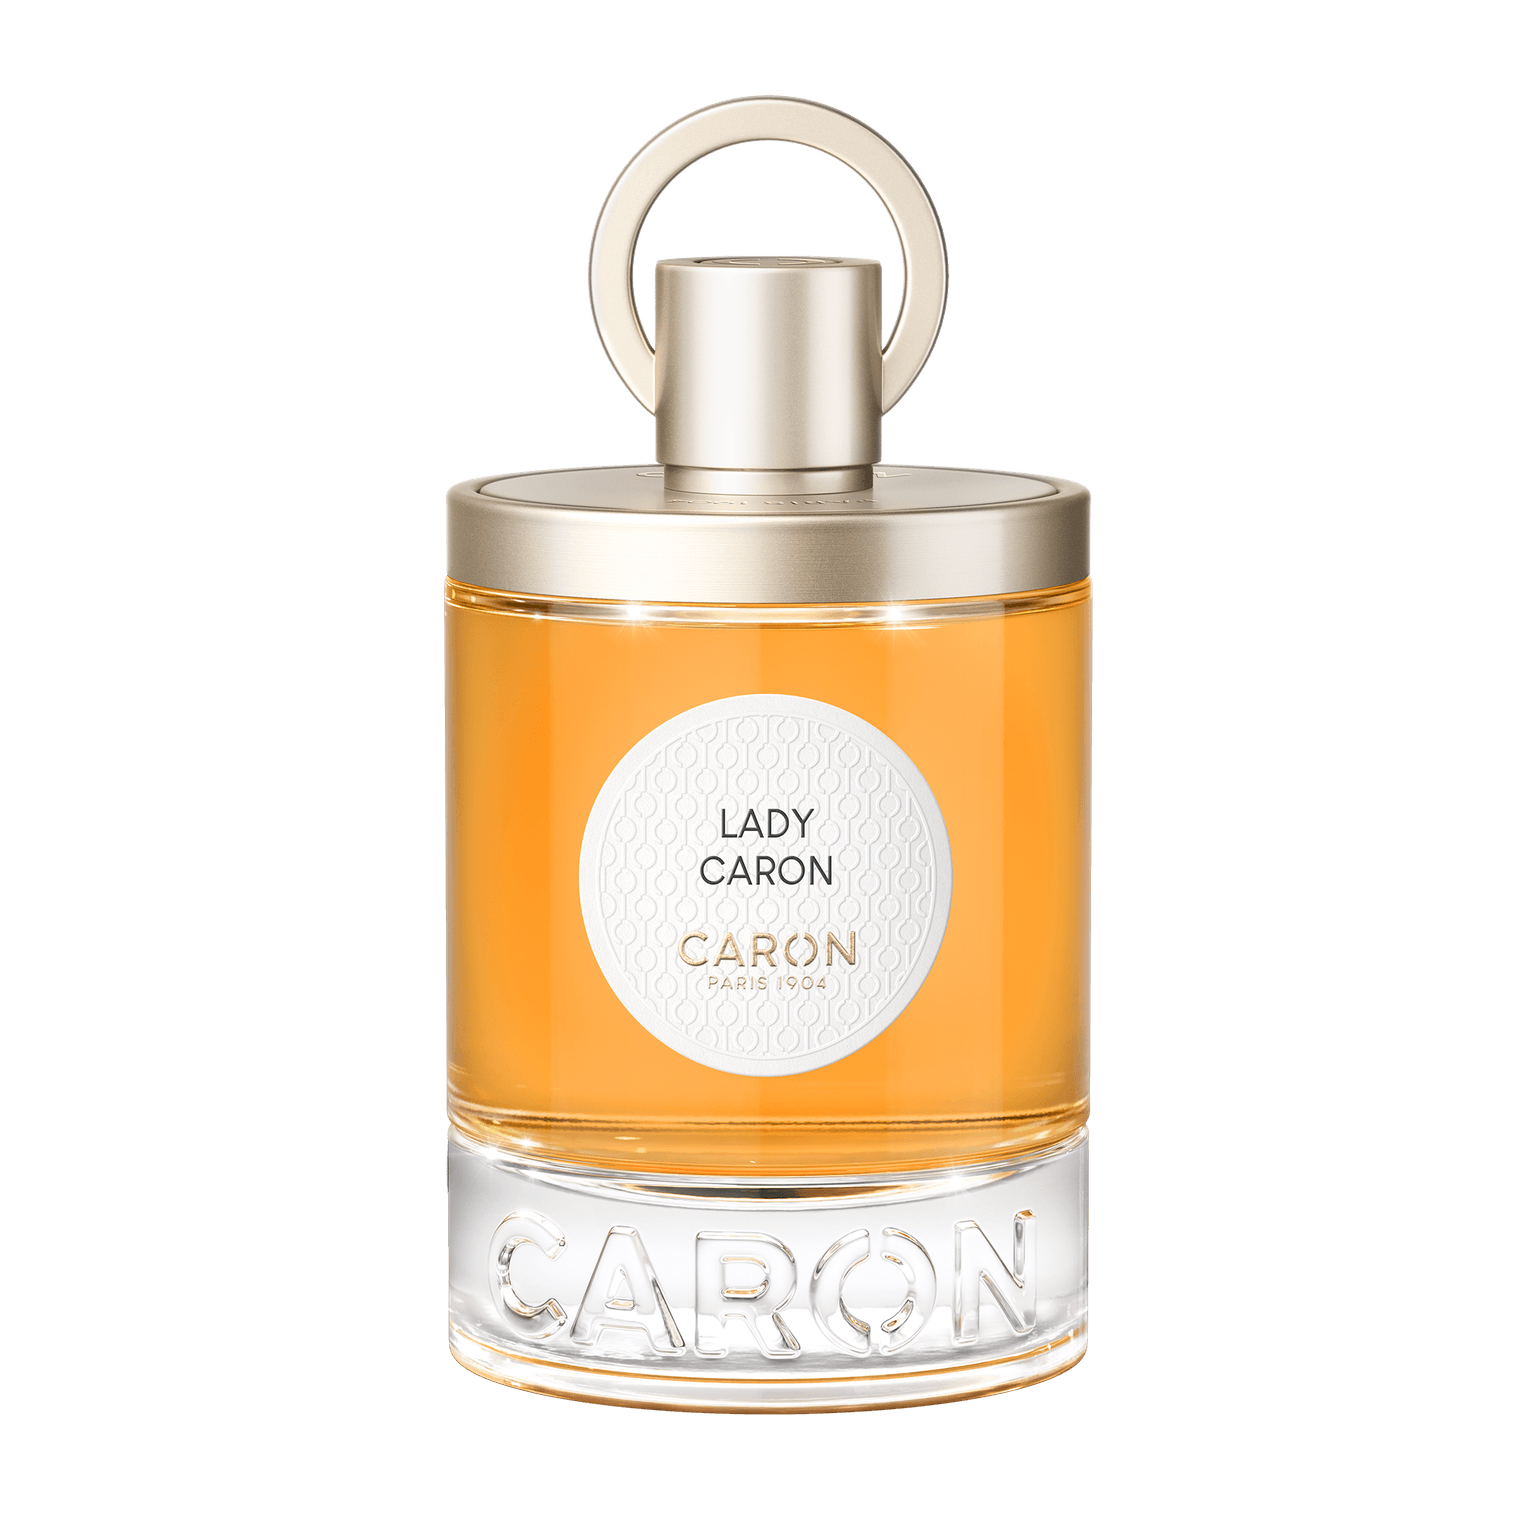 Caron Lady Caron 100ml | Perfume Lounge